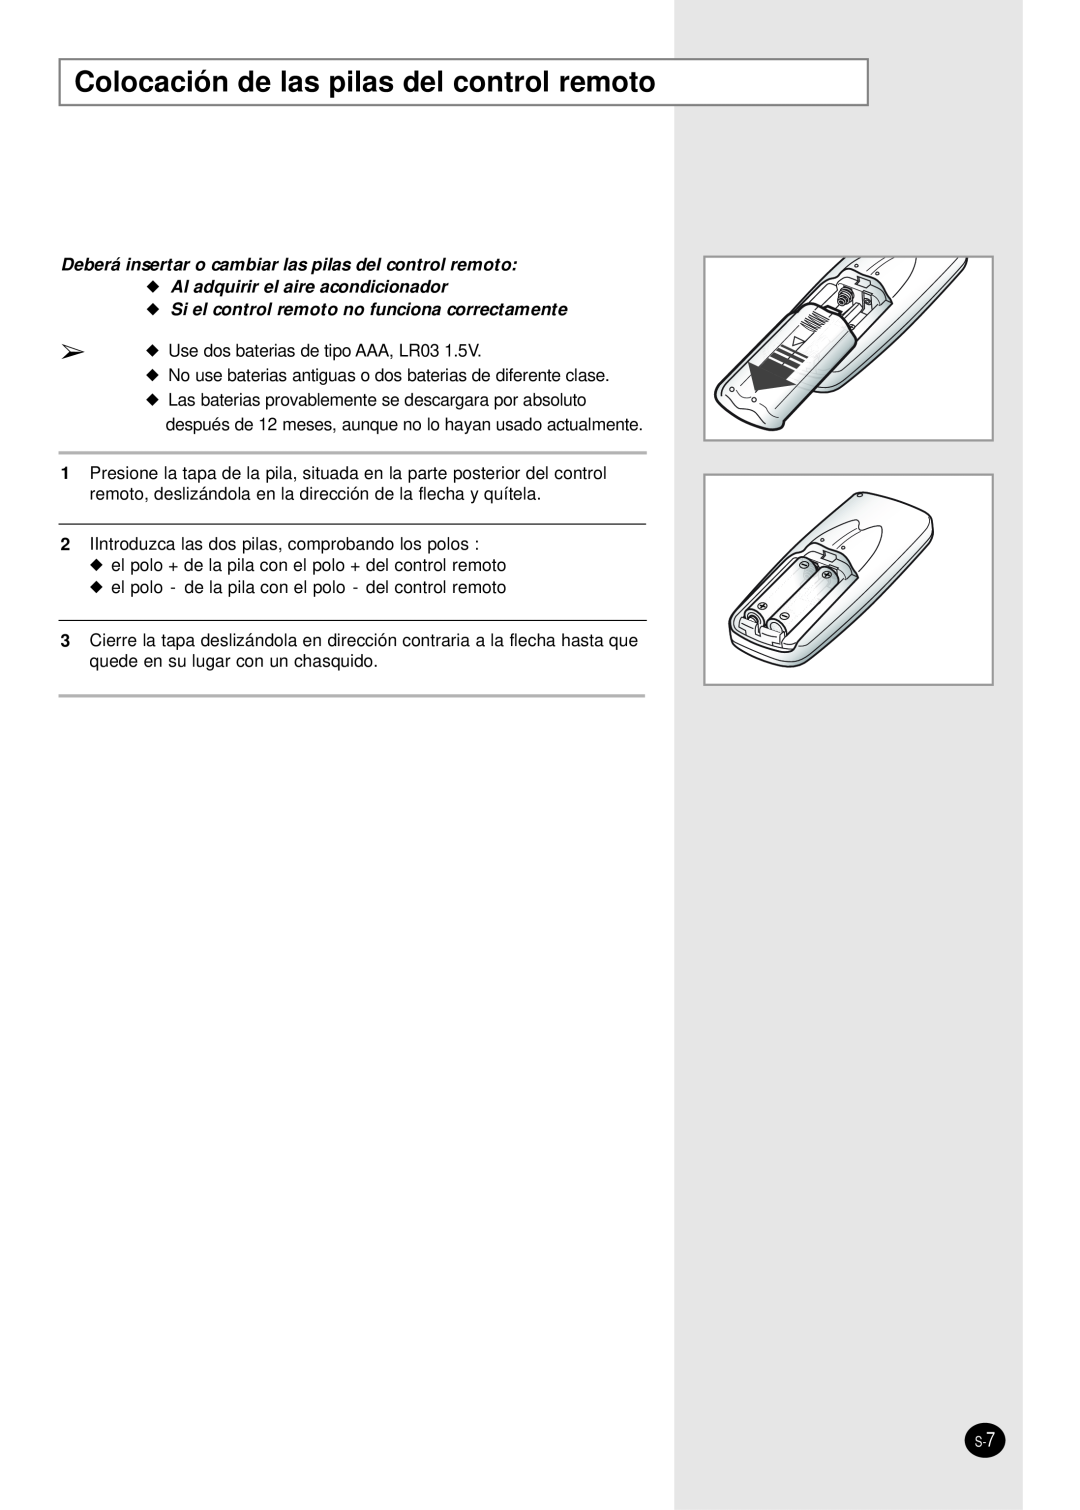 Samsung manual Colocación de las pilas del control remoto, Al adquirir el aire acondicionador 